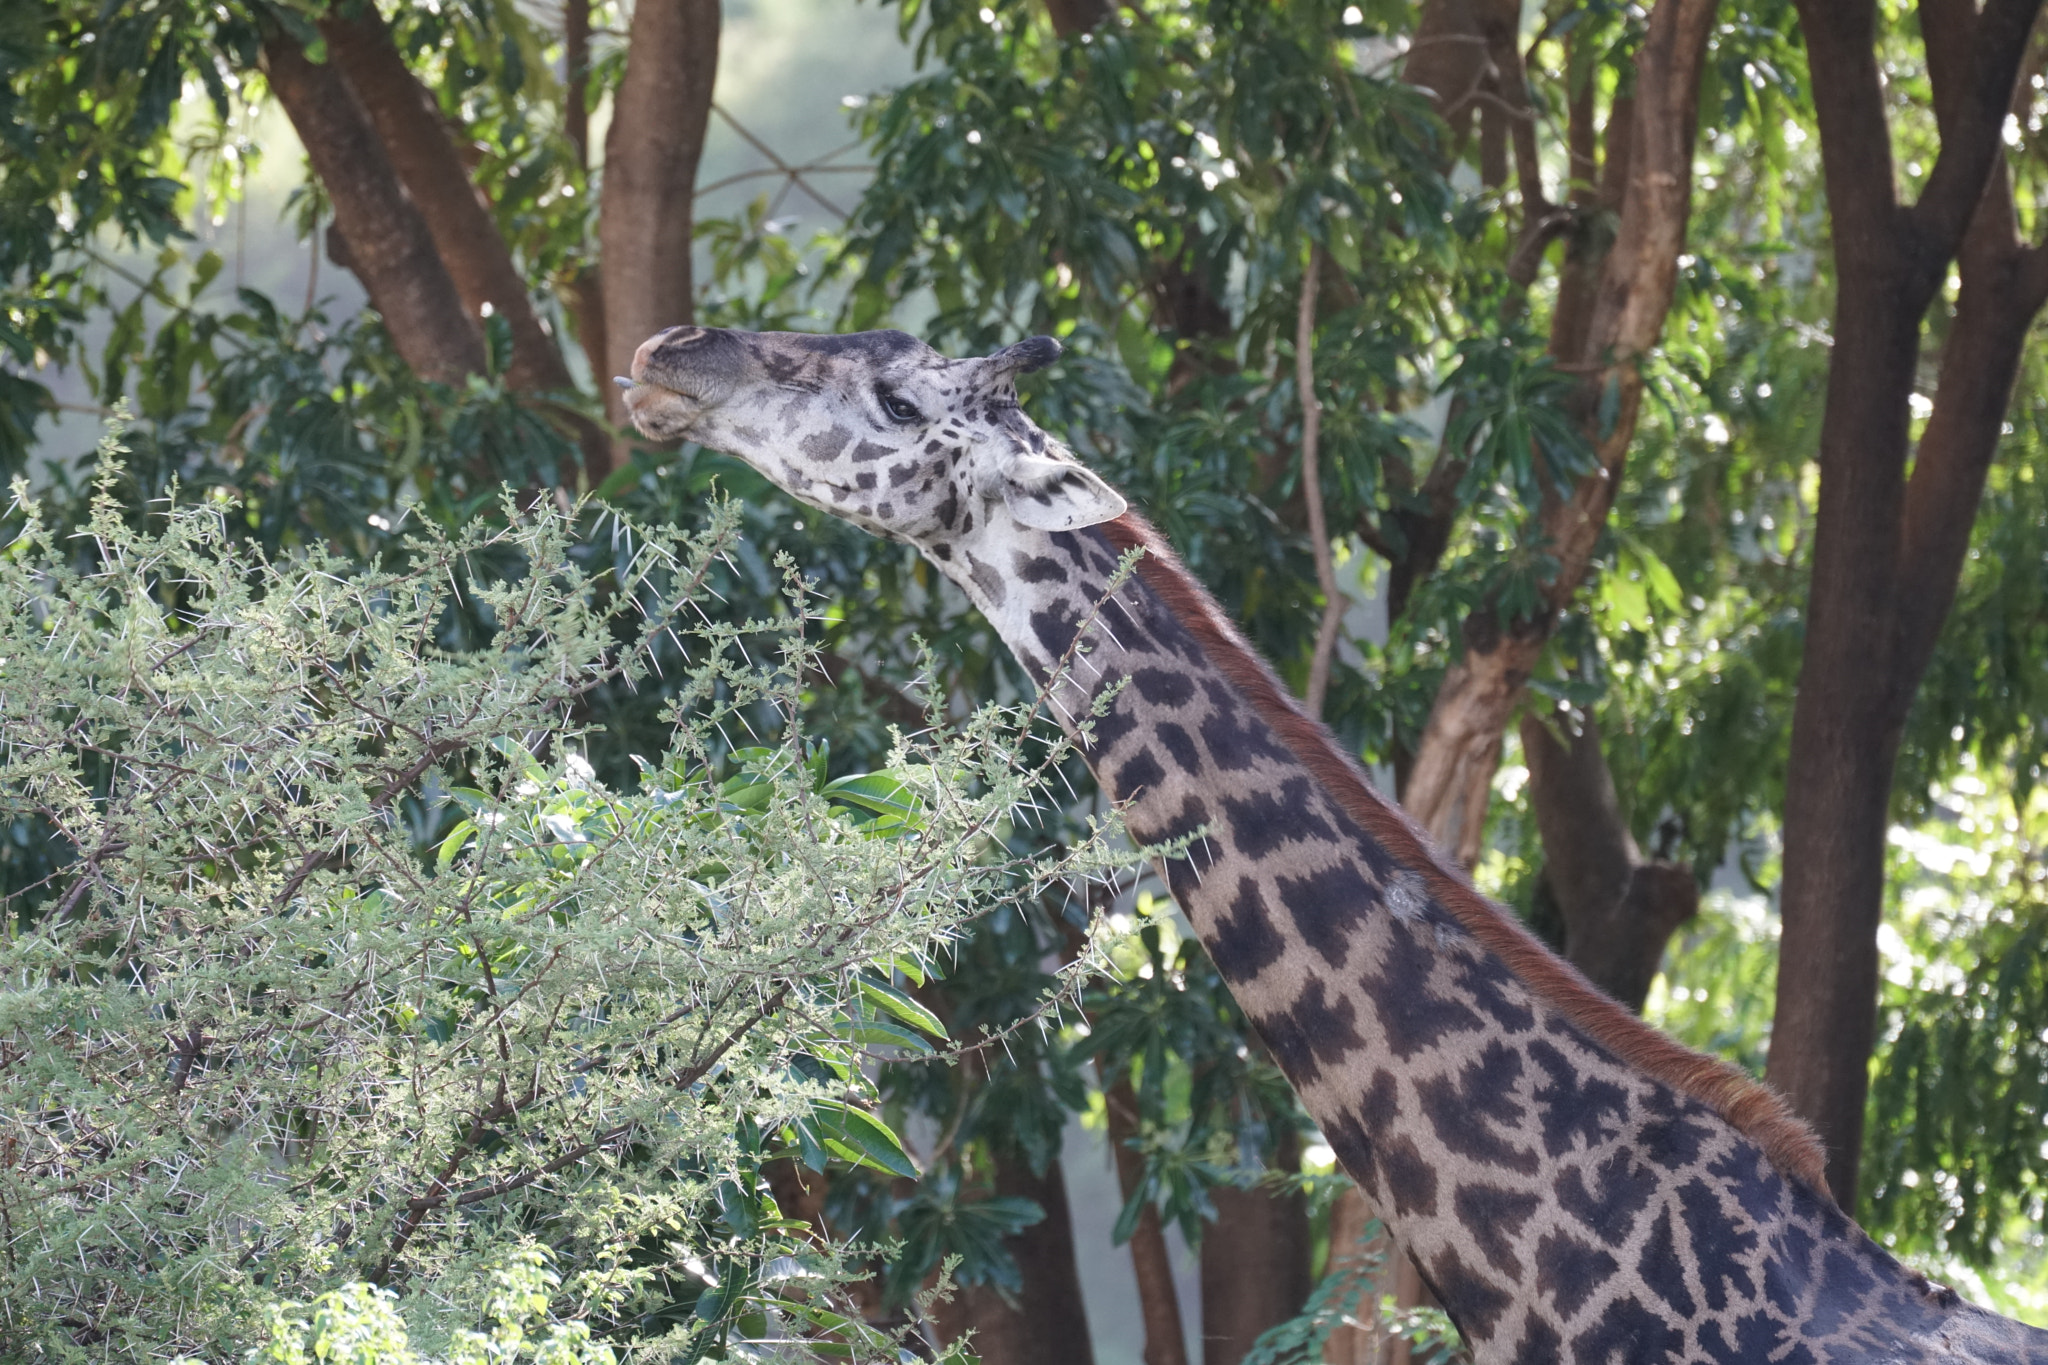 Sony a6500 sample photo. Masai giraffe photography